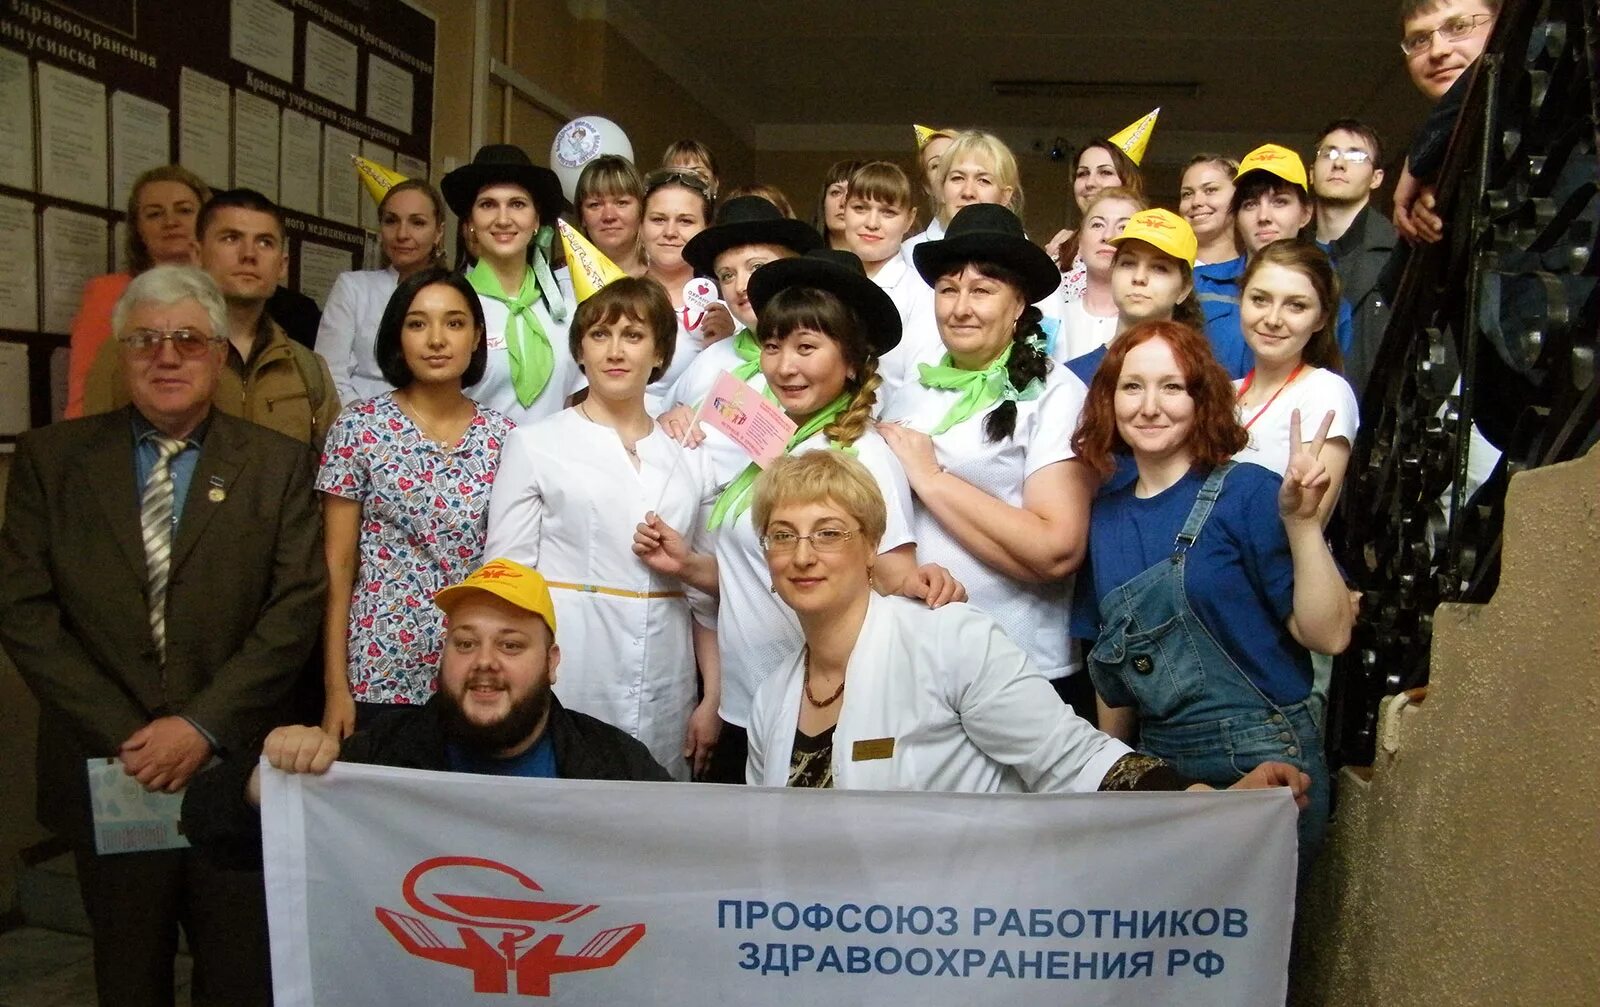 Сайт московских профсоюзов. Профсоюз. Профсоюзный работник. Фото группы профсоюза. Профсоюз больницы.